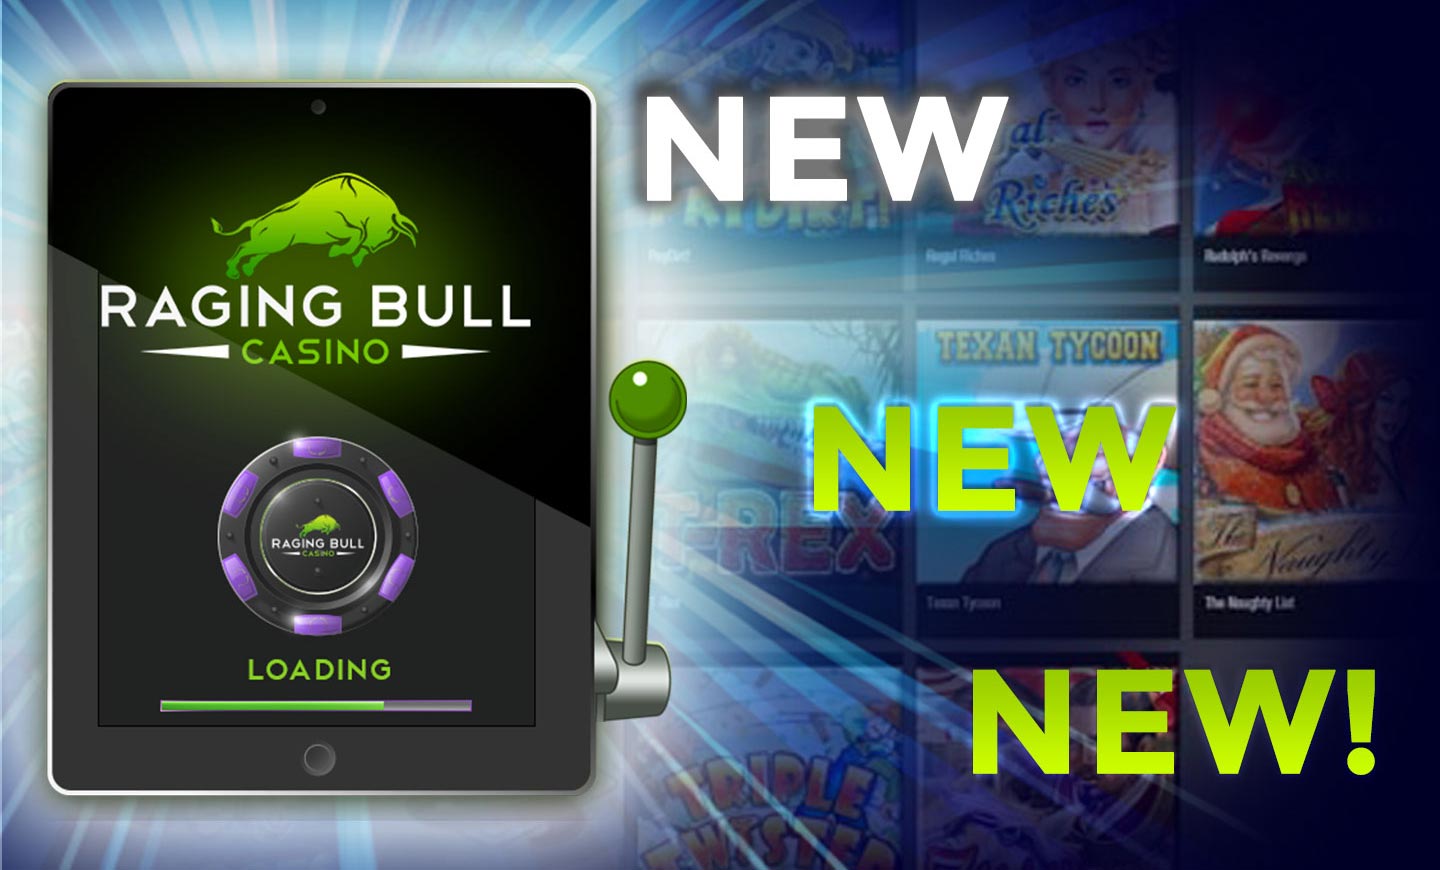 Raging Bull mobile casino